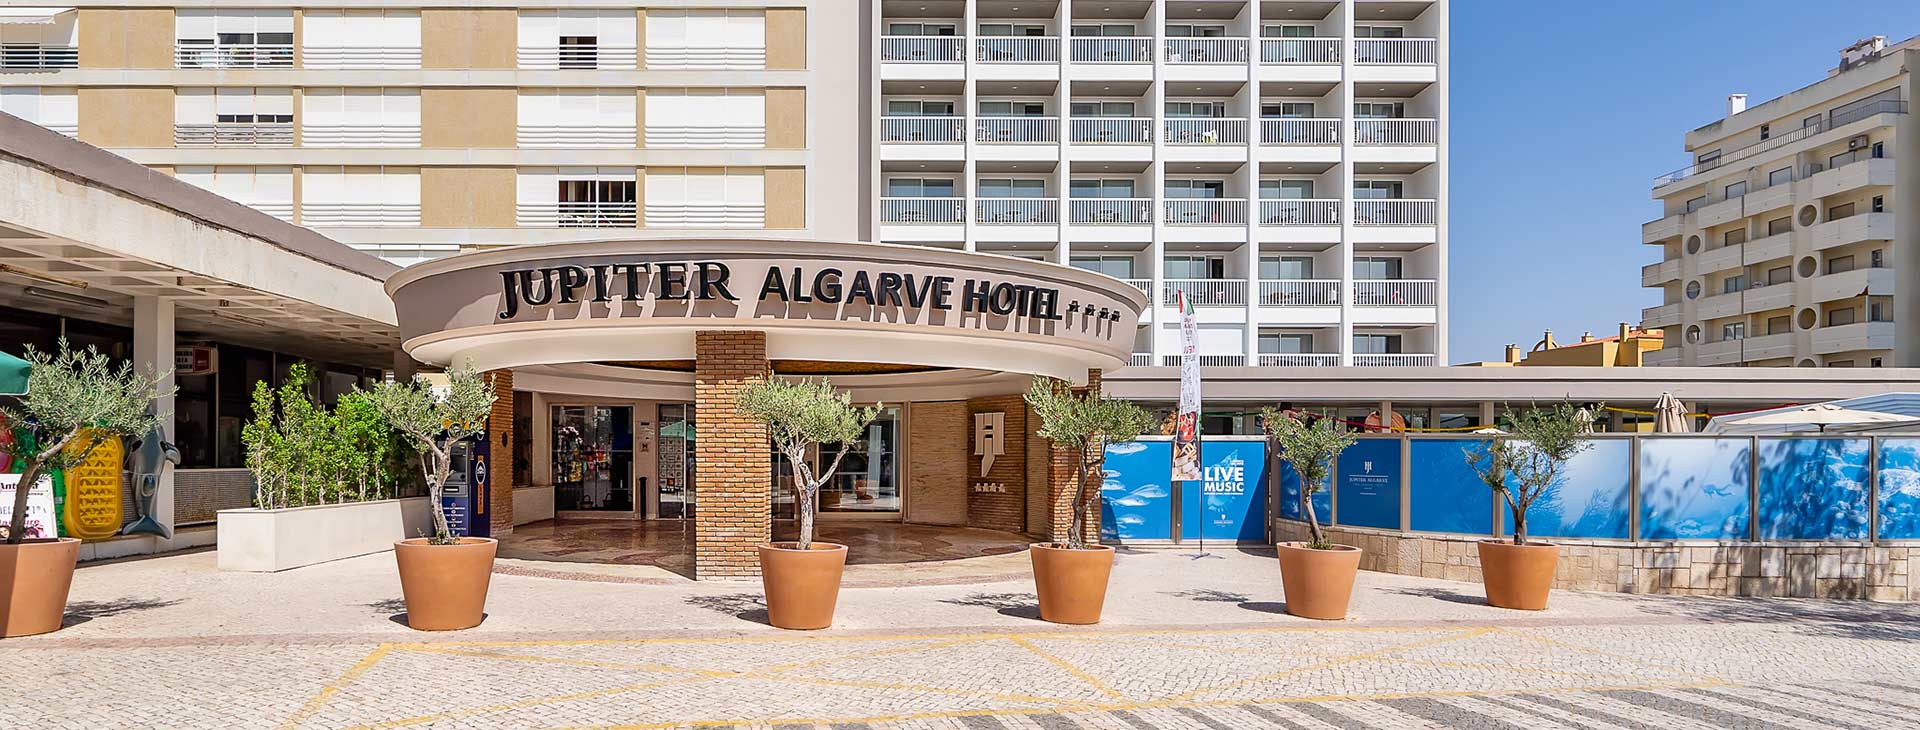 Jupiter Algarve Hotel Obrázok15